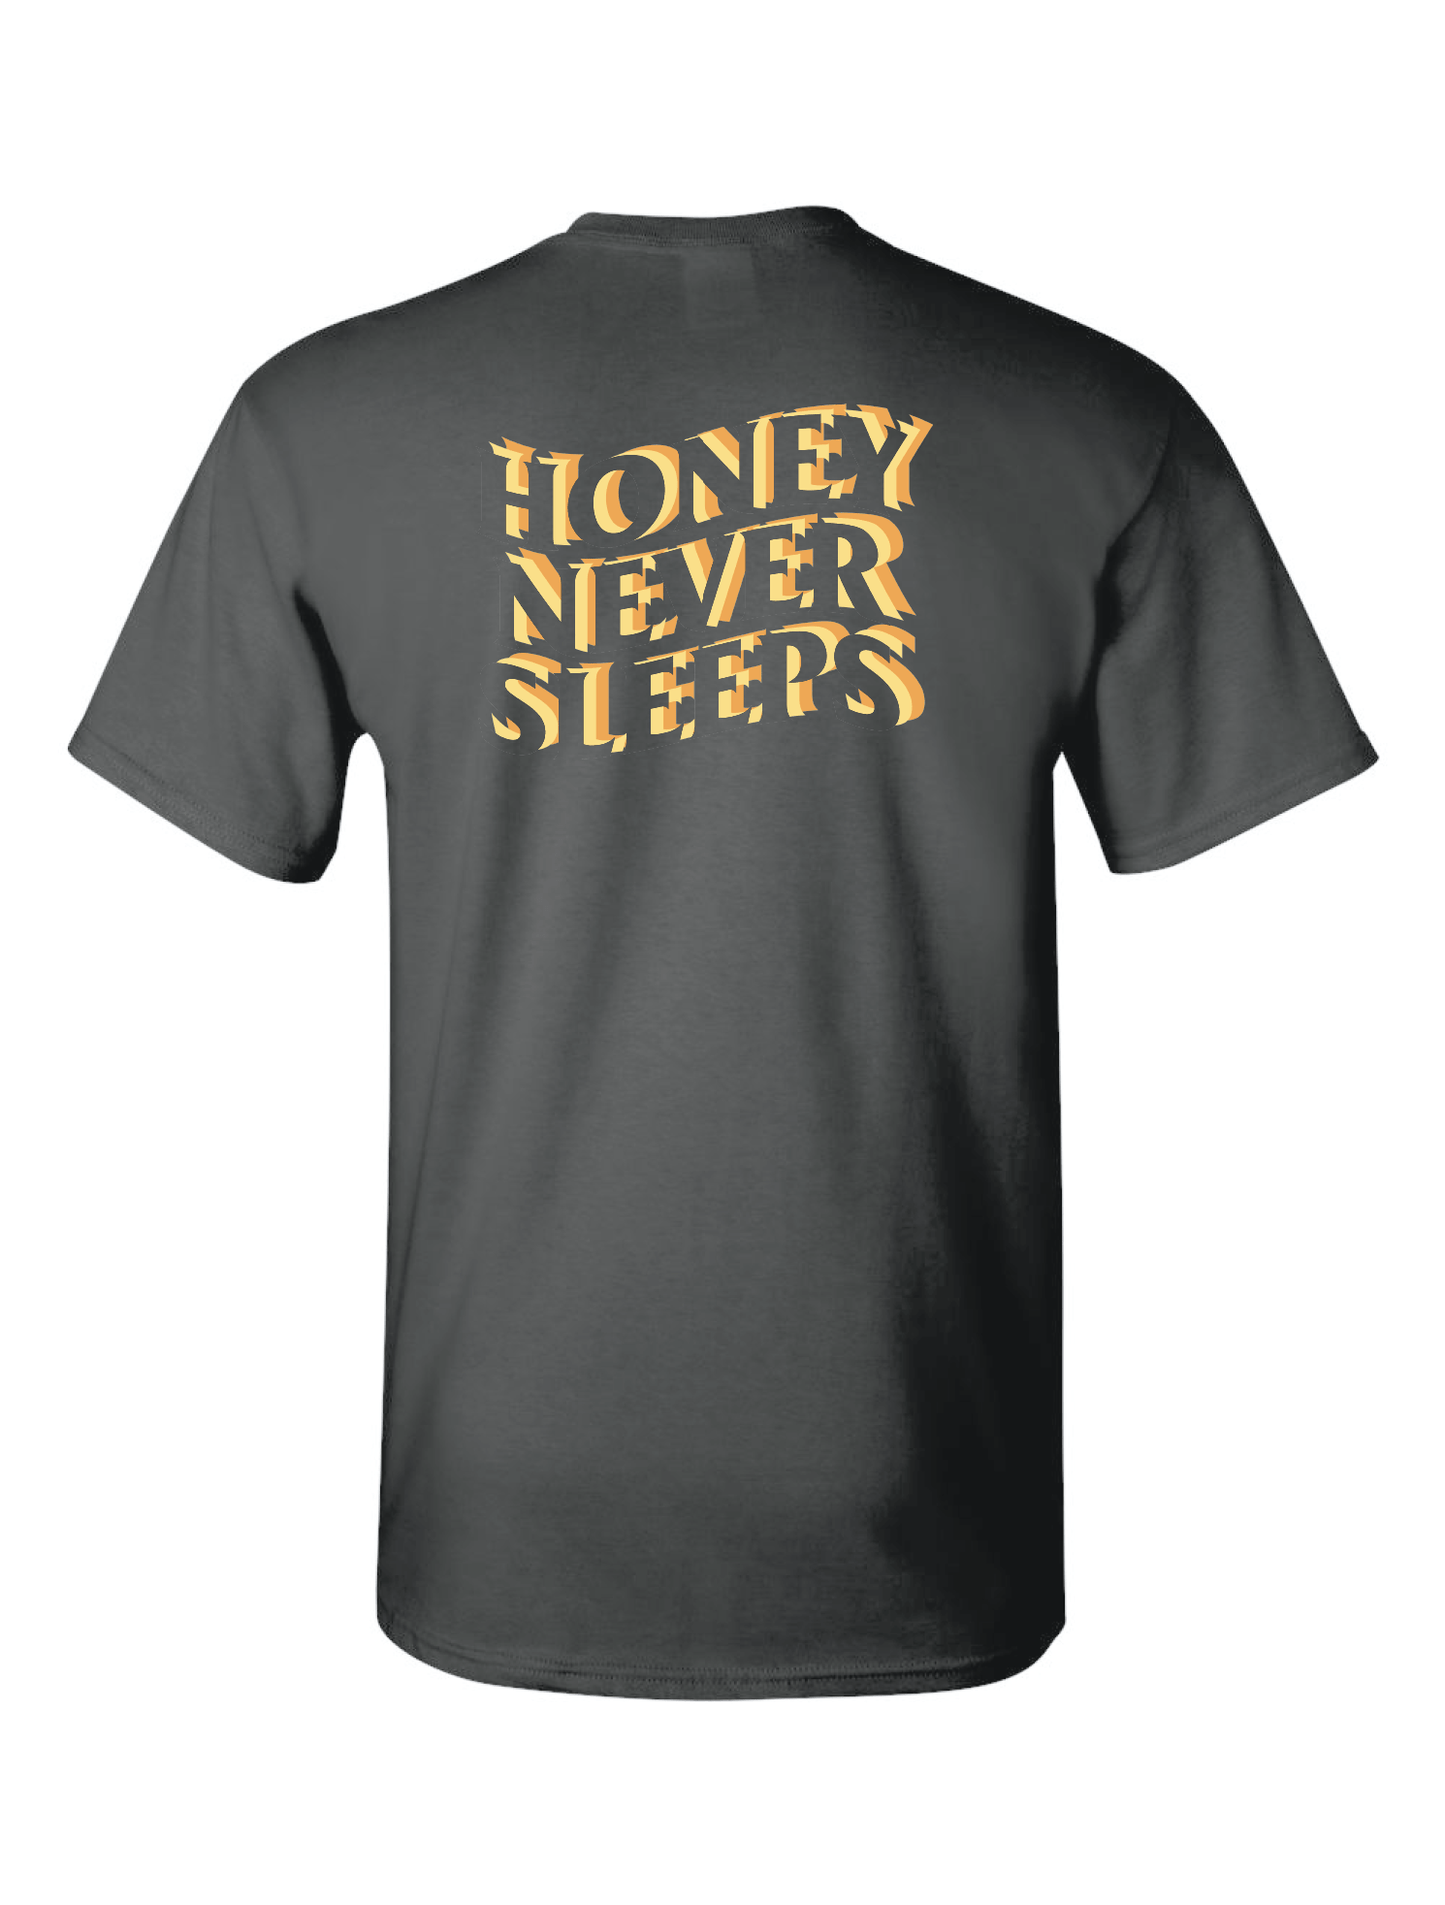 Honey Never Sleeps Shirt - Honeyland